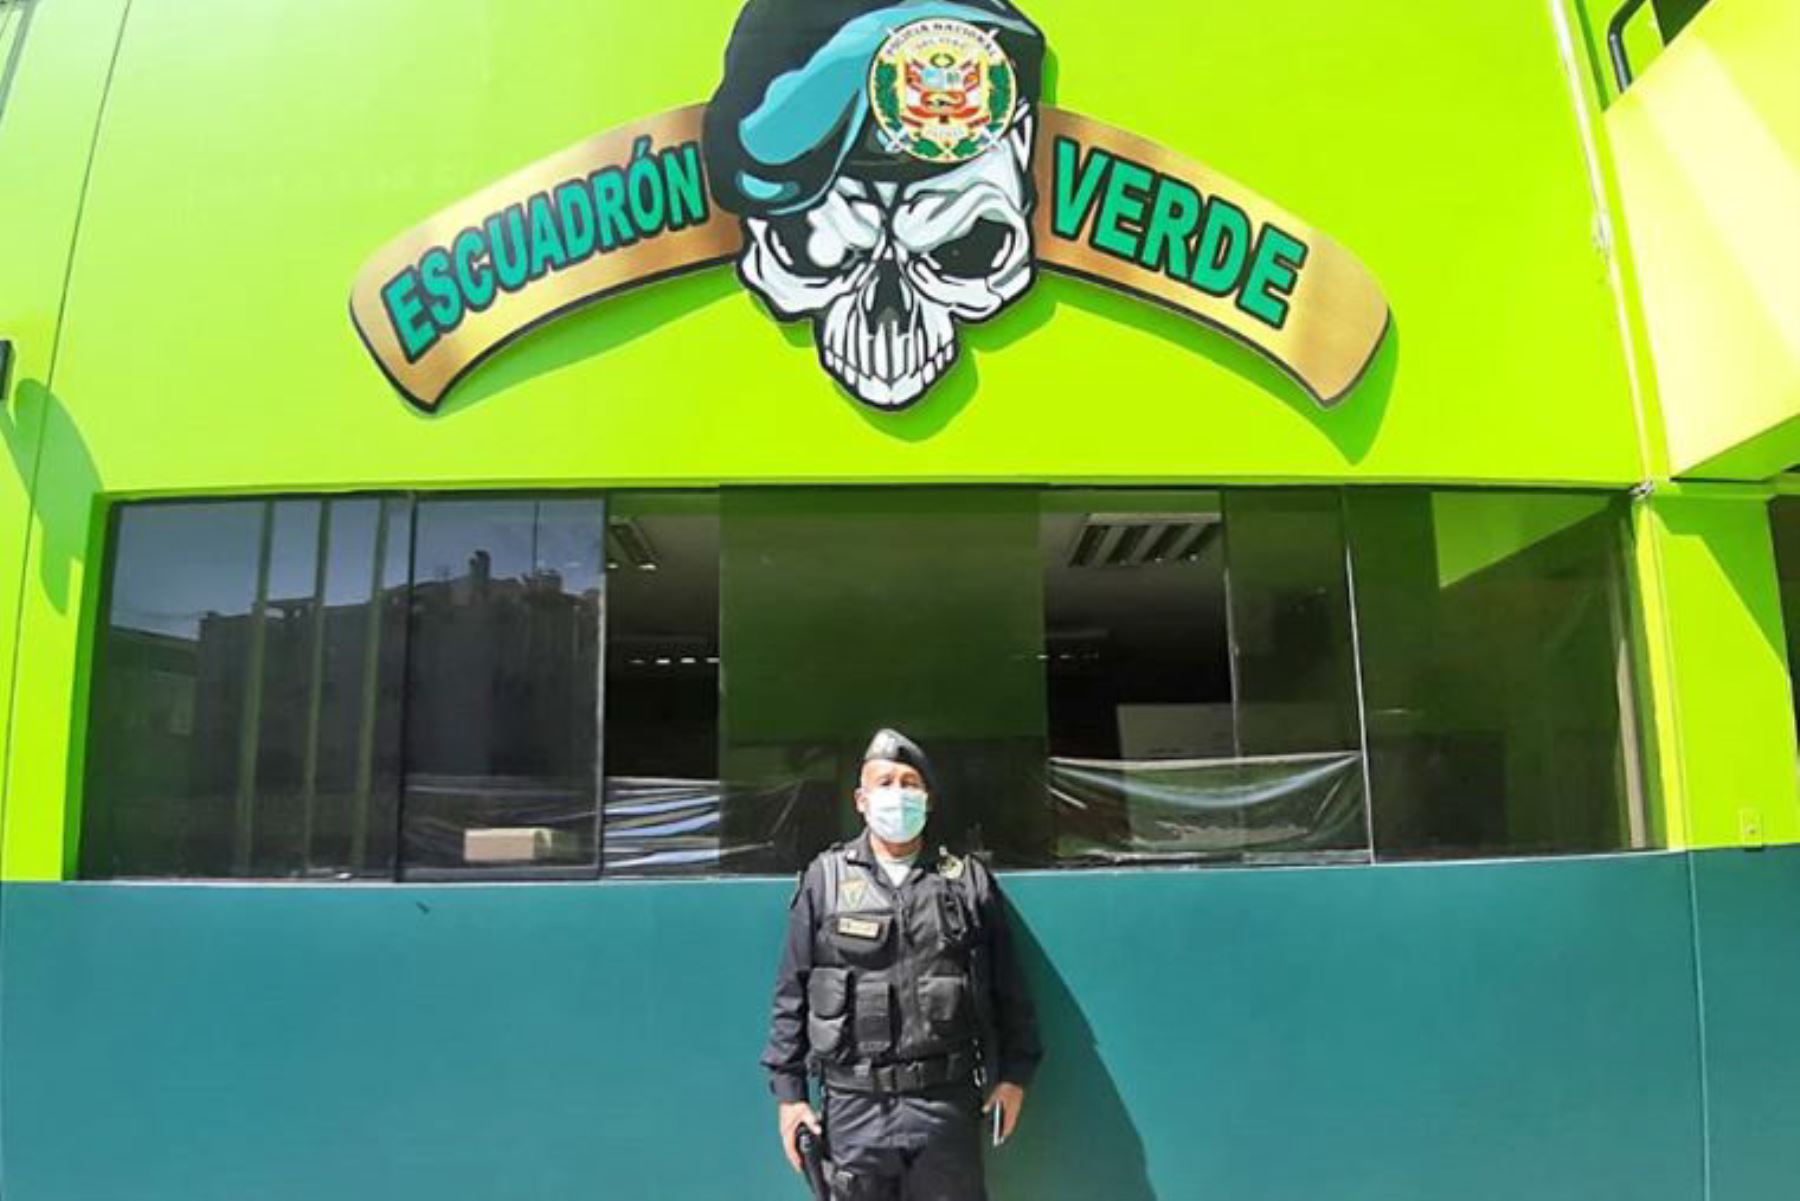 El superior PNP Abdón Mamani pertenece al segundo batallón del Escuadrón Verde. Foto: El Peruano